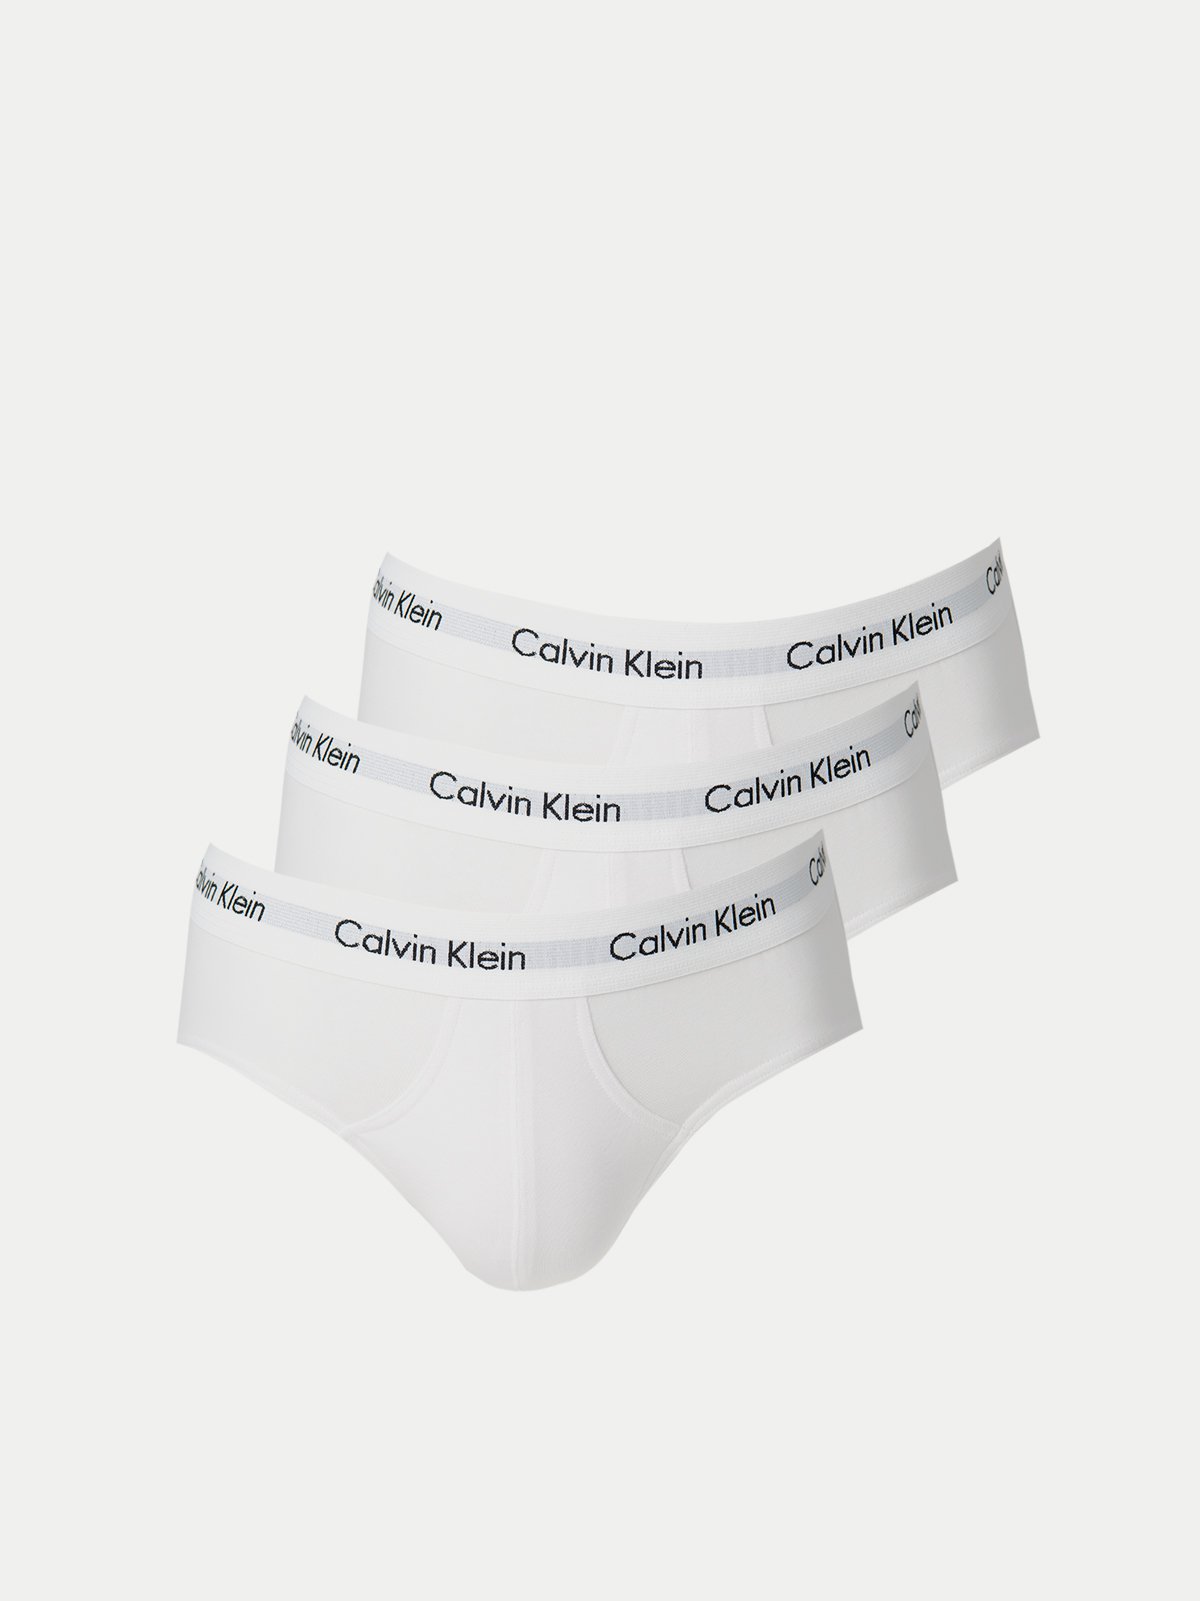 Men's underwear set 3PK white Calvin Klein Underwear